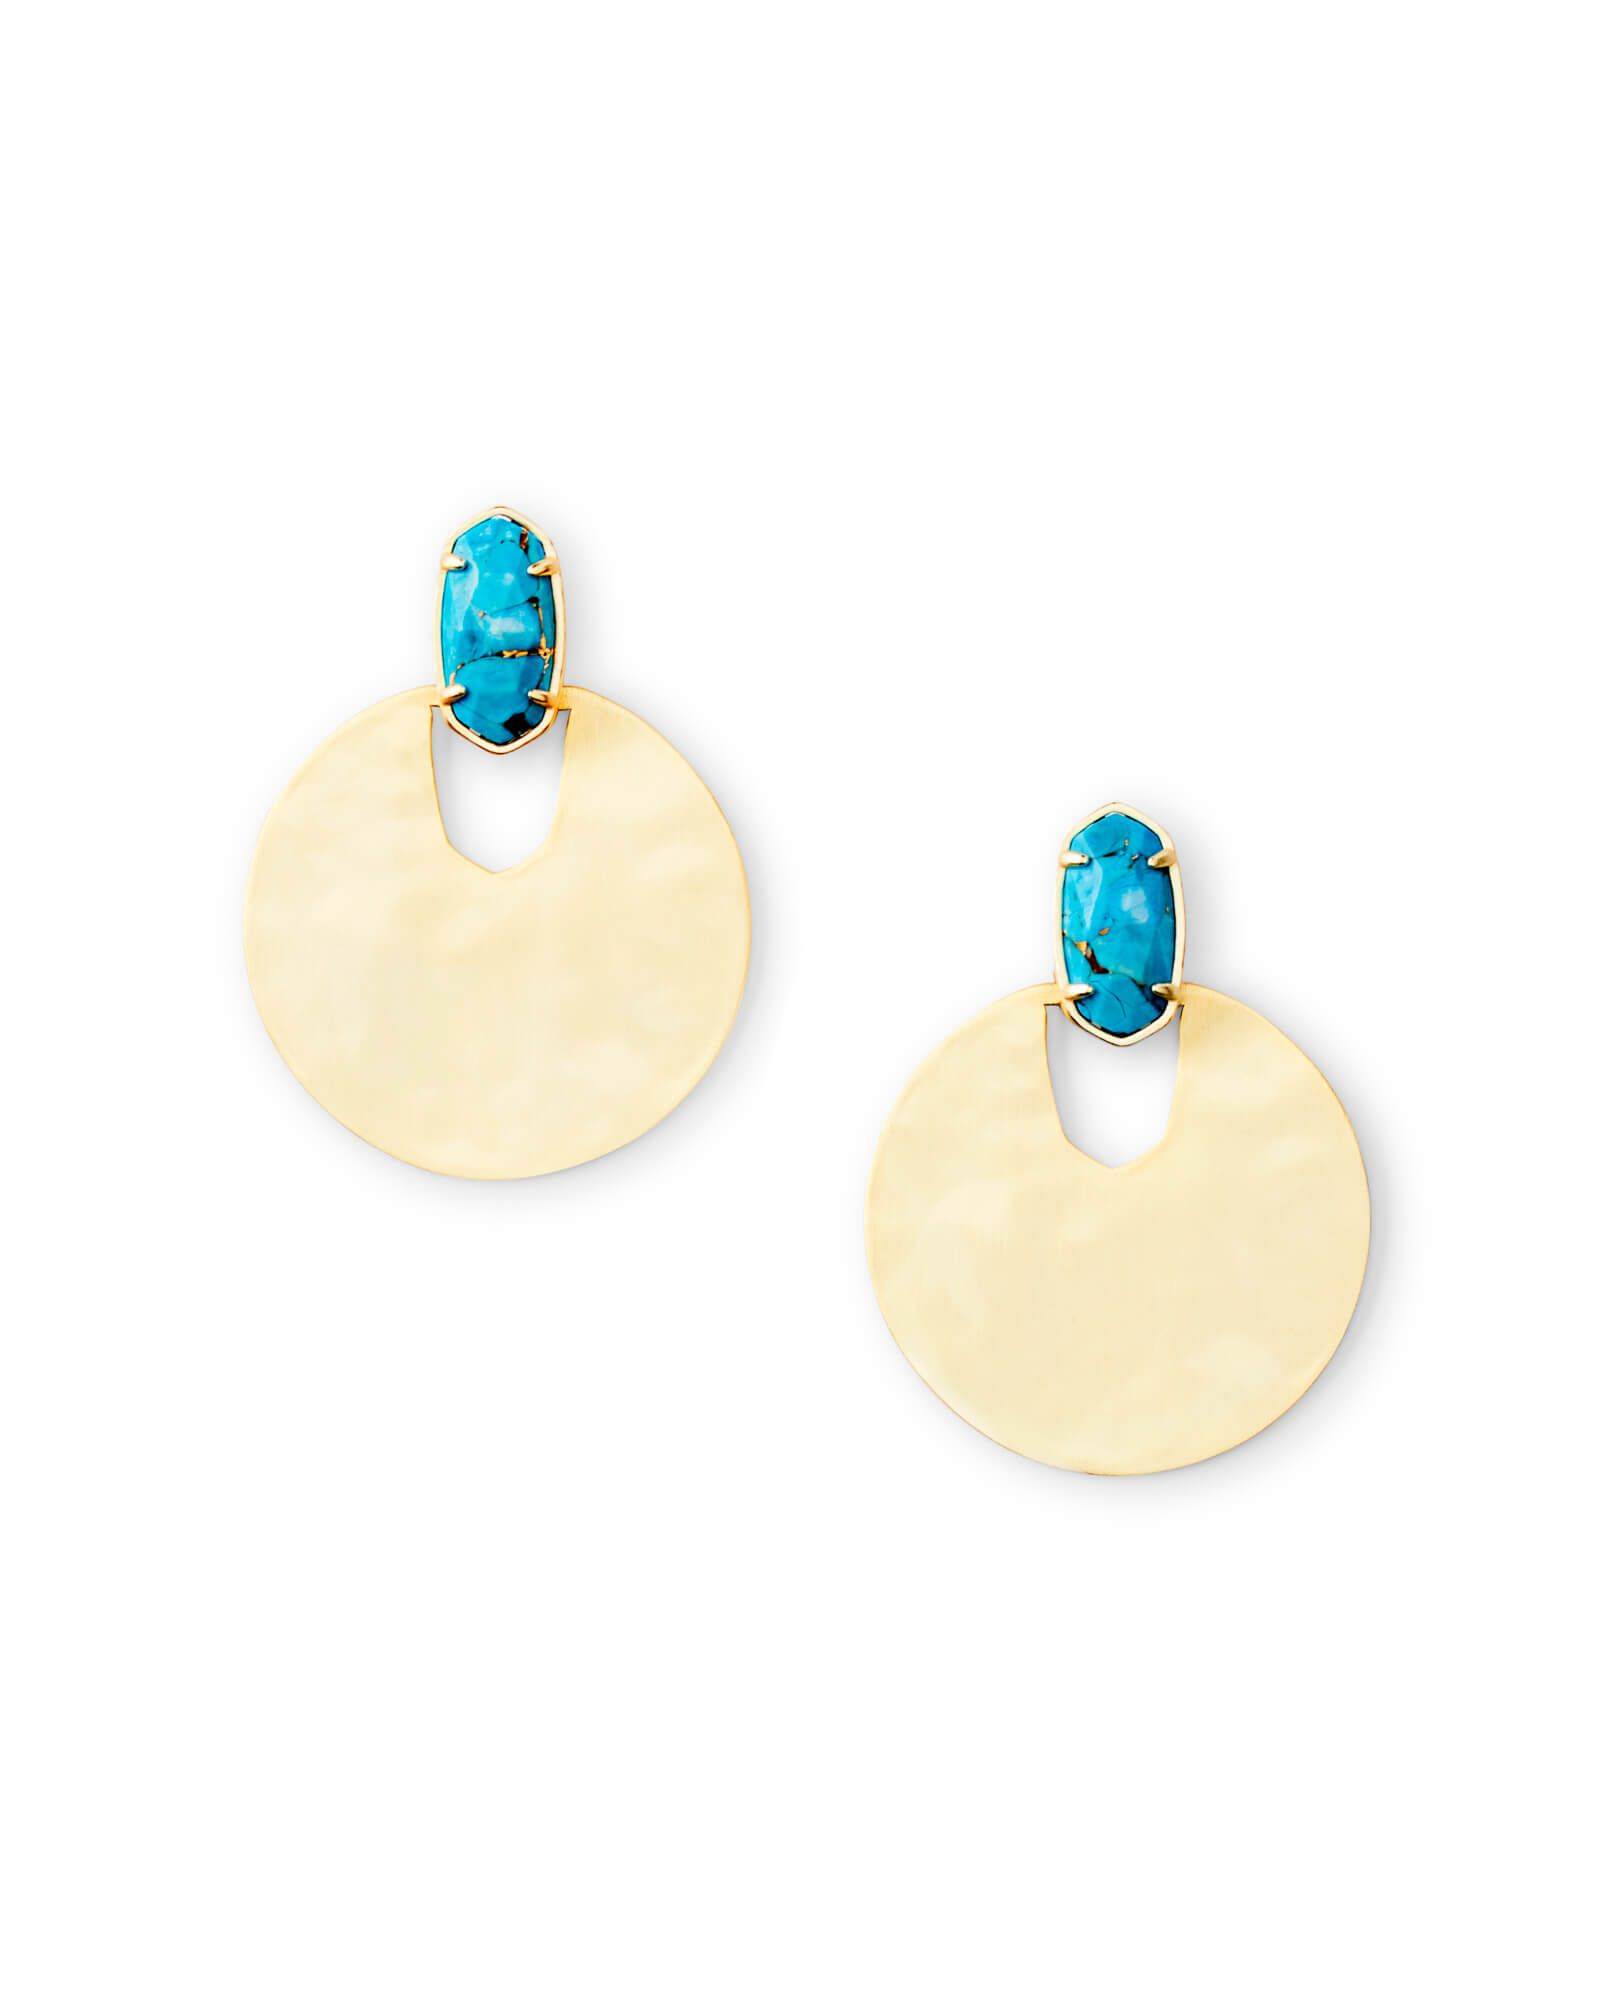 Deena Gold Hoop Earrings in Azalea Illusion | Kendra Scott | Kendra Scott